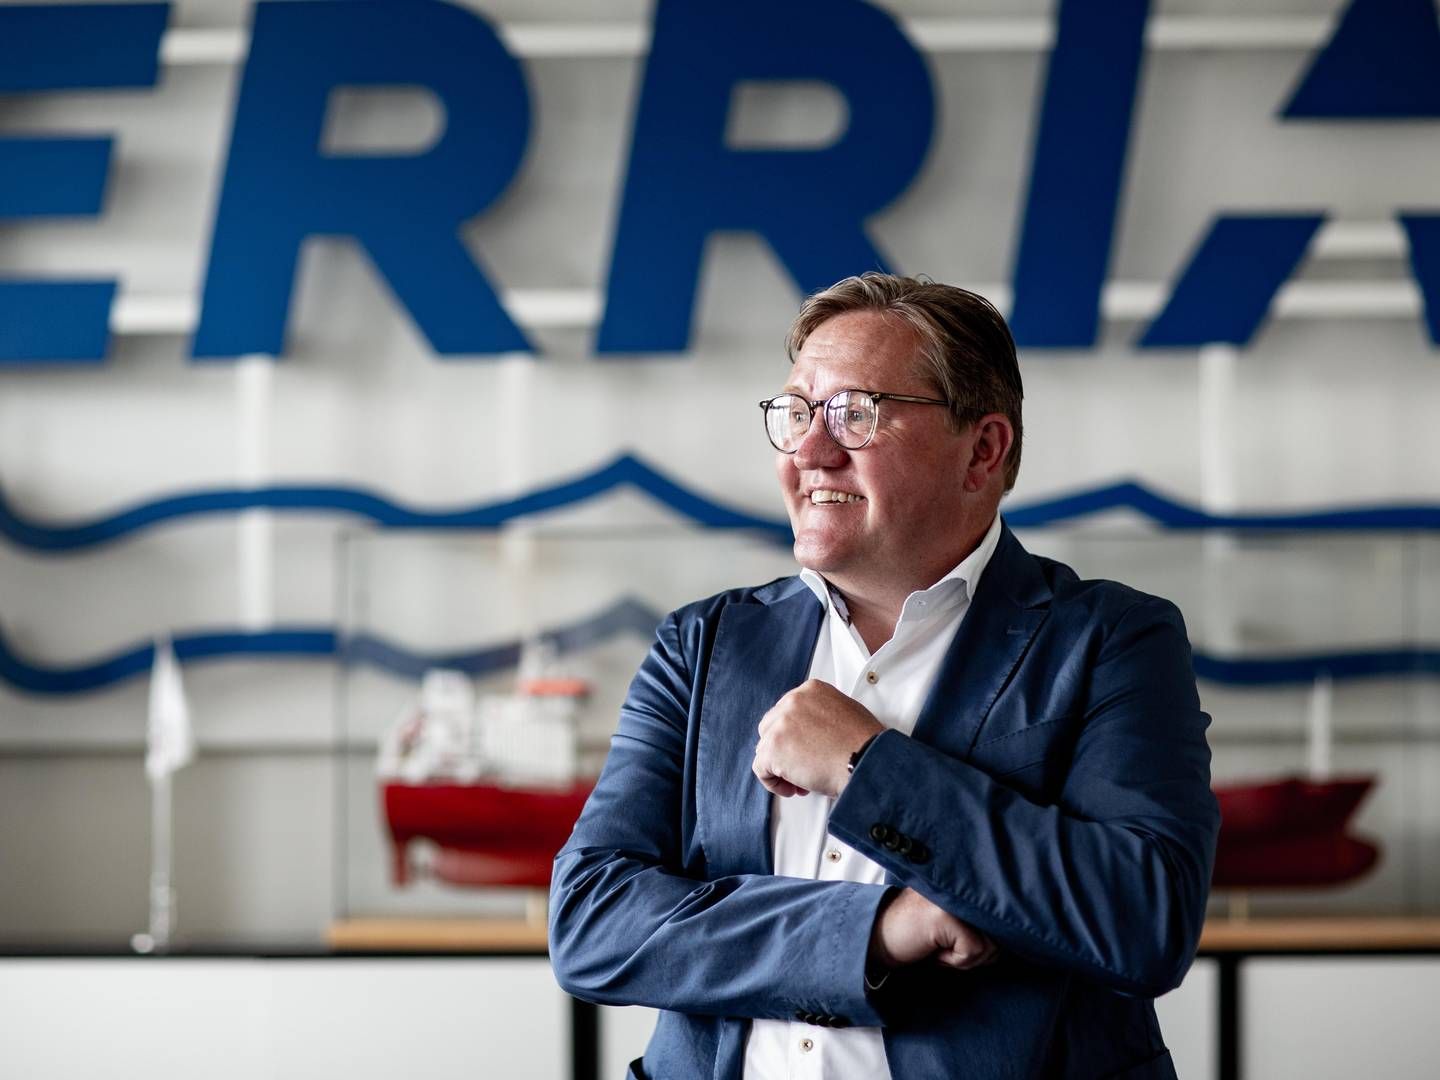 Fremgang i indtjeningen har betydet, at egenkapitalen i shippingselskabet Erria igen er positiv, oplyser Henrik N. Andersen, adm. direktør i selskabet. | Foto: Pr Foto